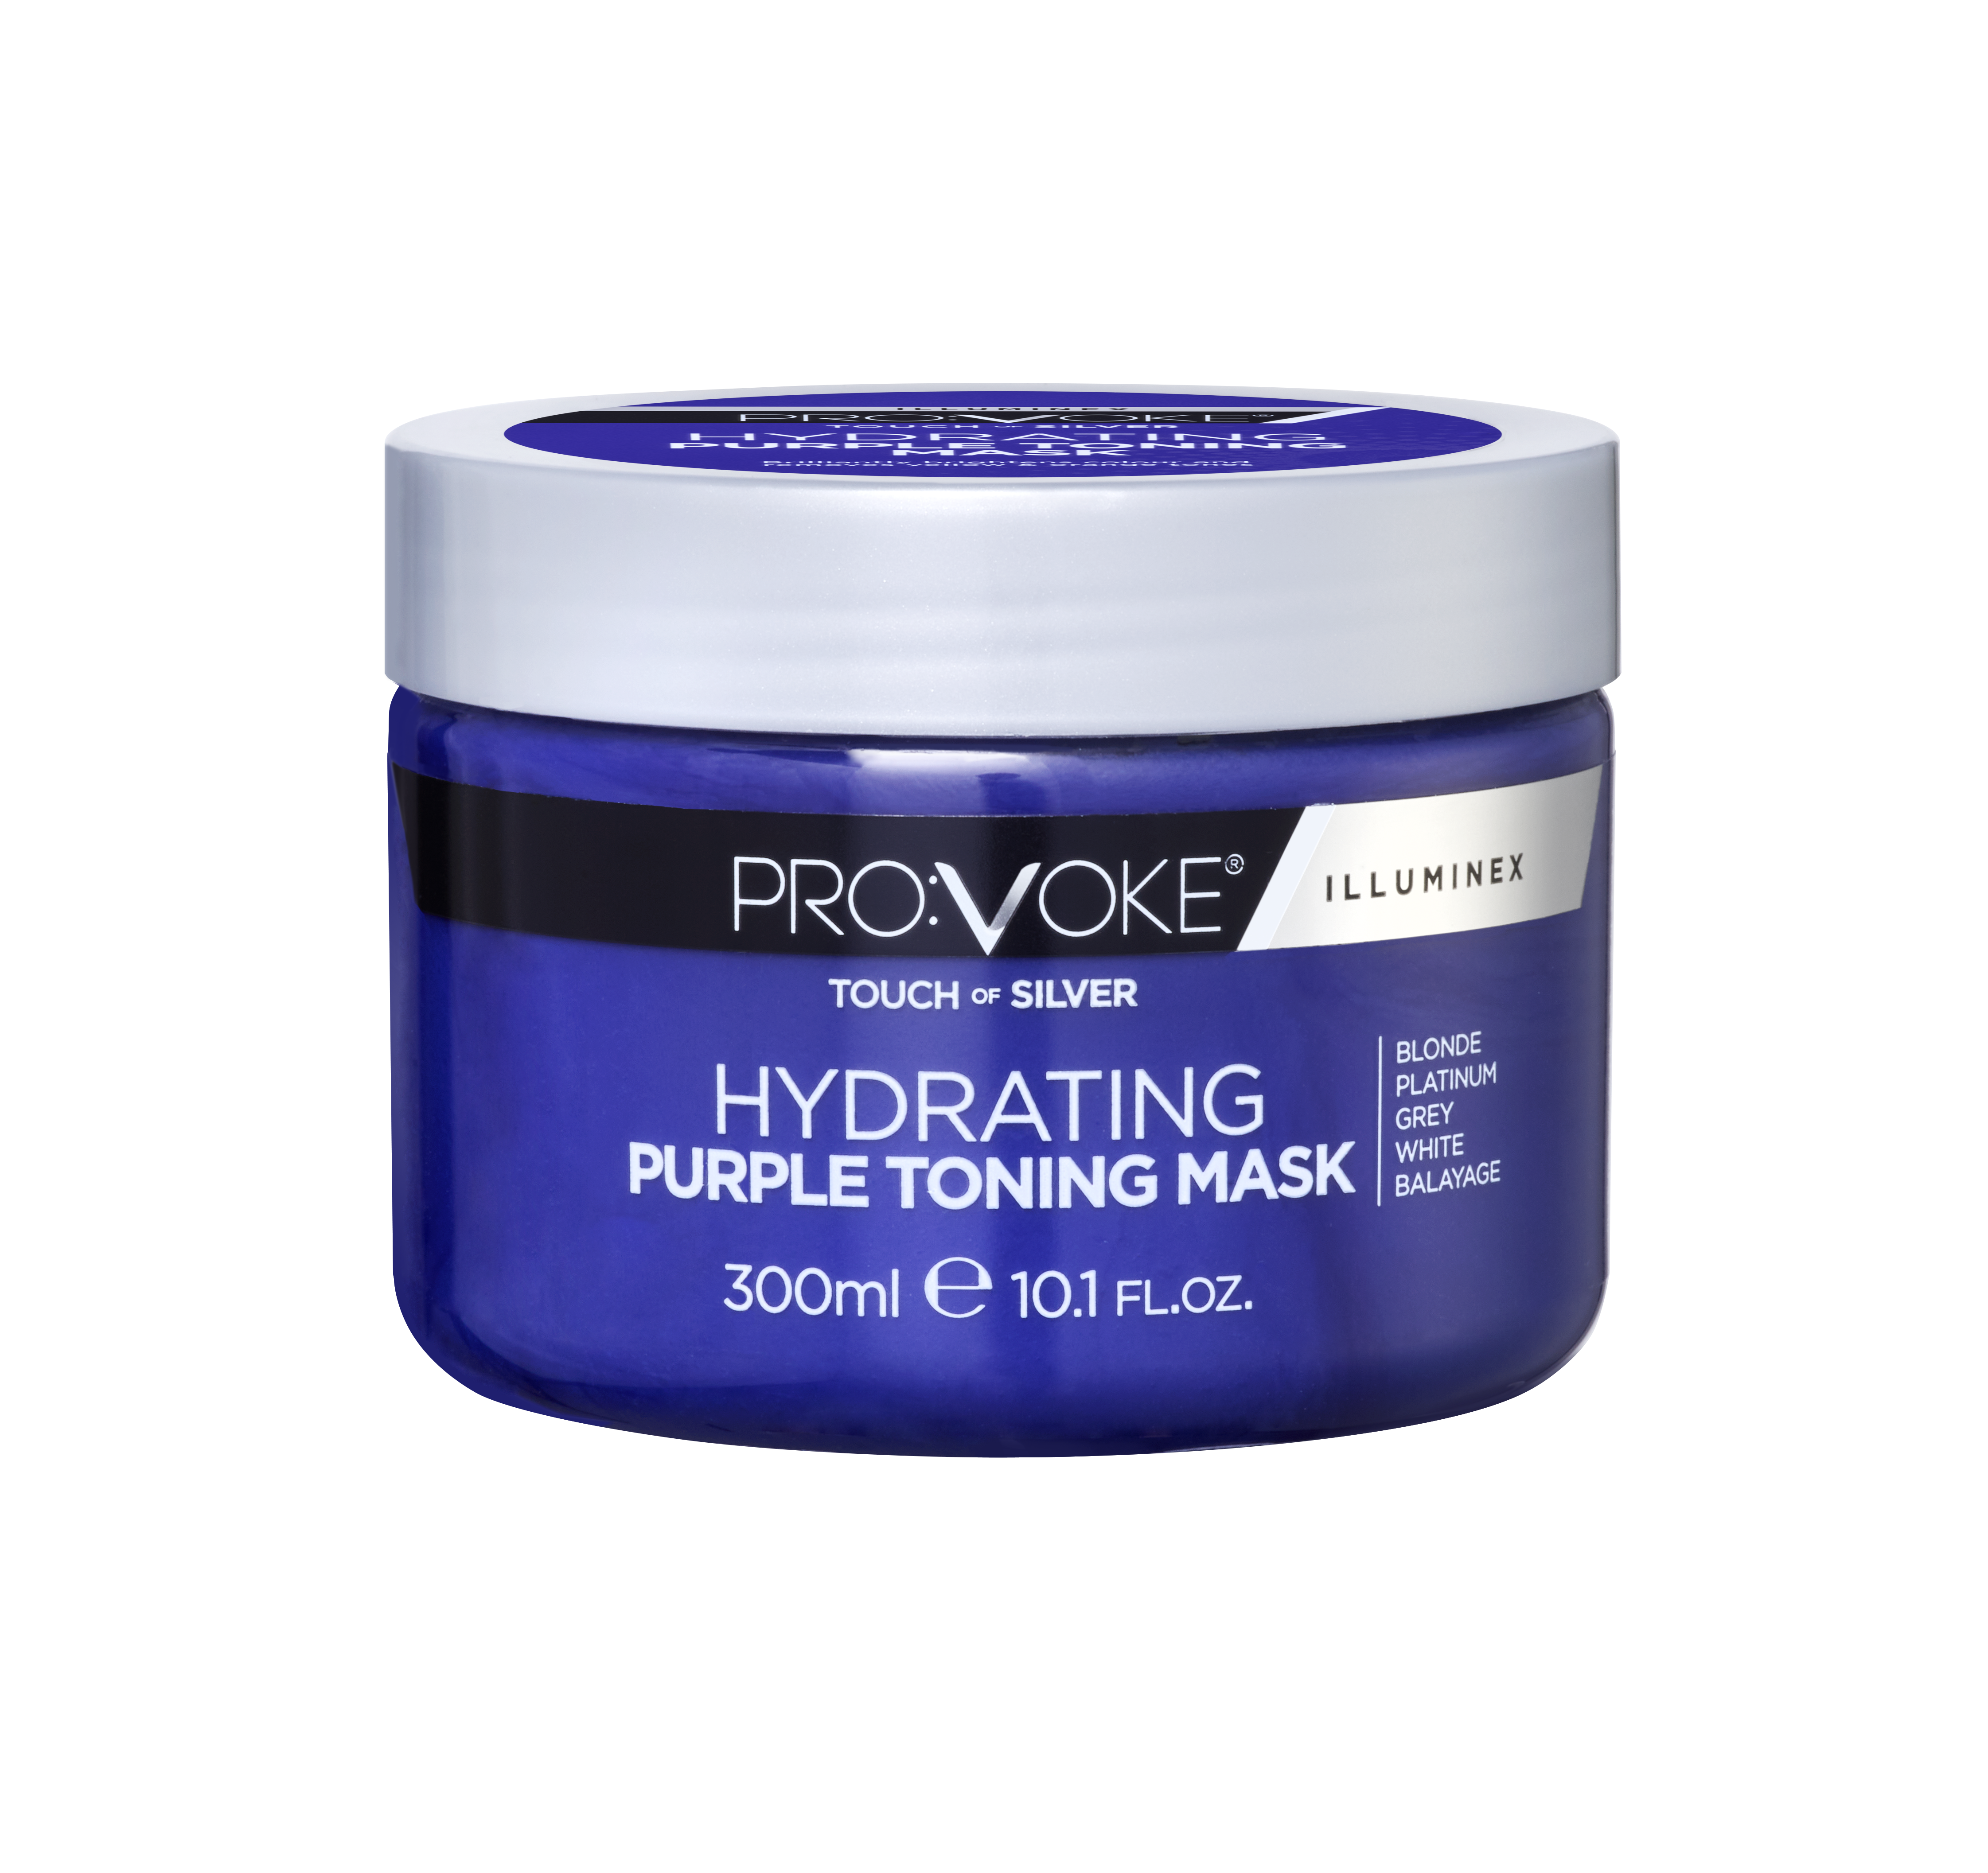 ILLUMINEX - Hydrating Purple Toning Hair Mask - PROVOKE